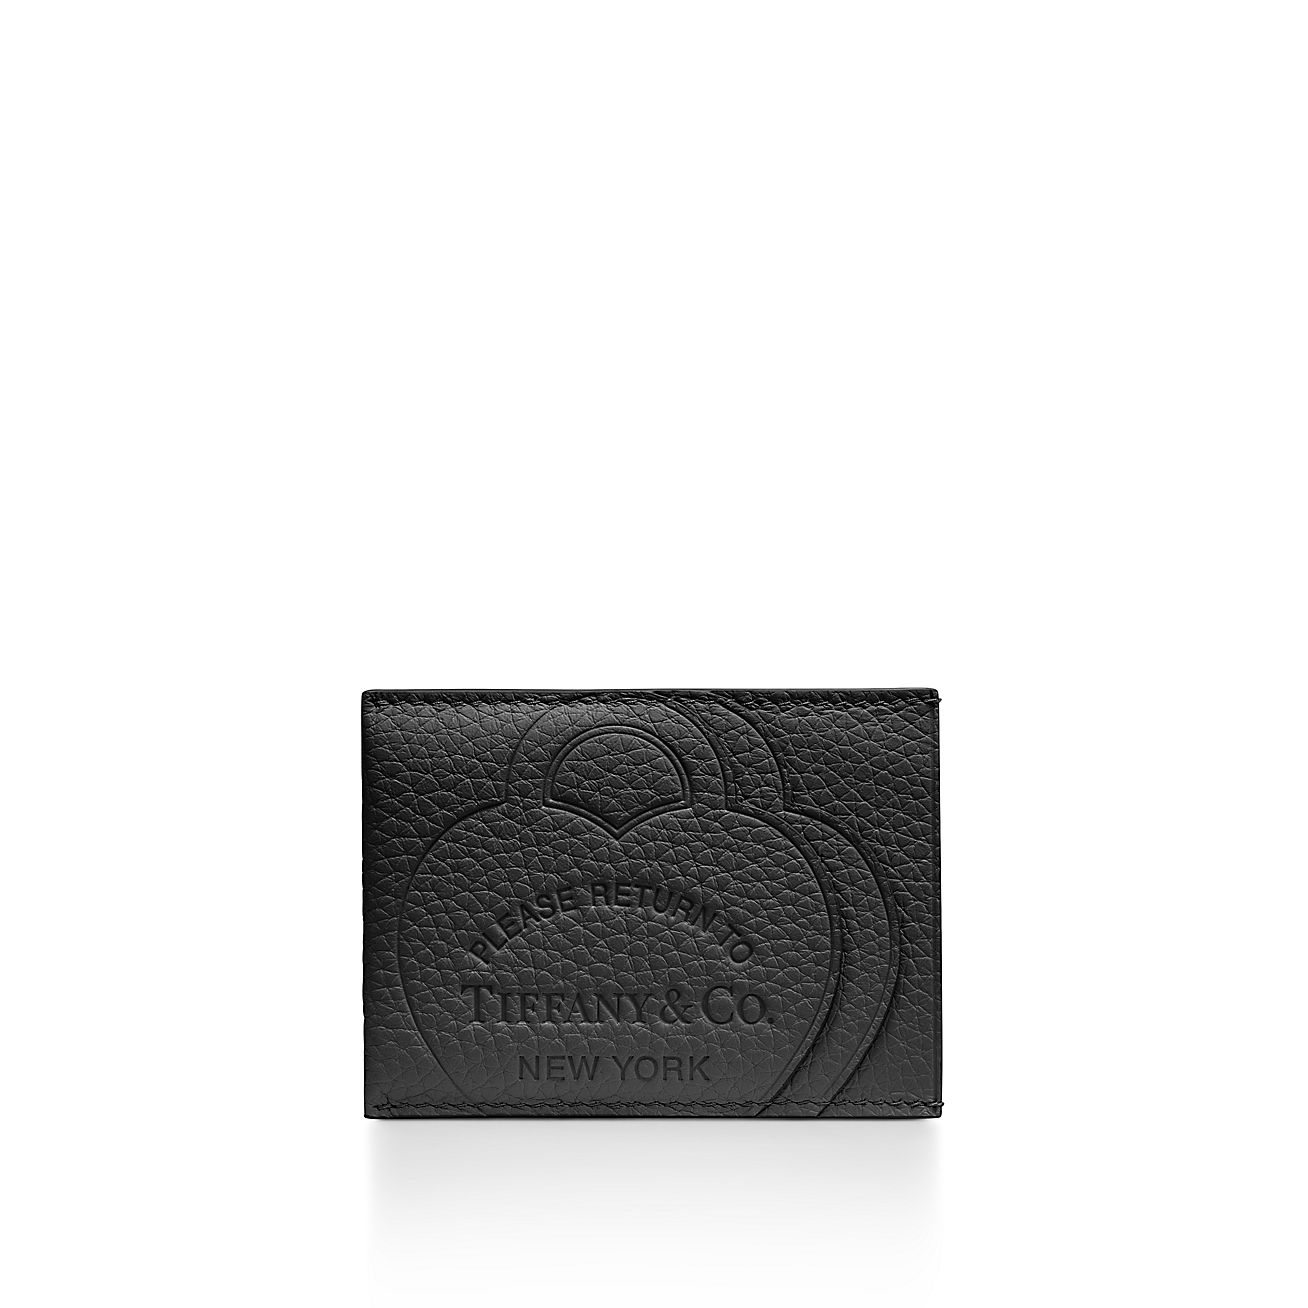 リターン トゥ ティファニー™ カード ケース ブラック レザー | Tiffany & Co.